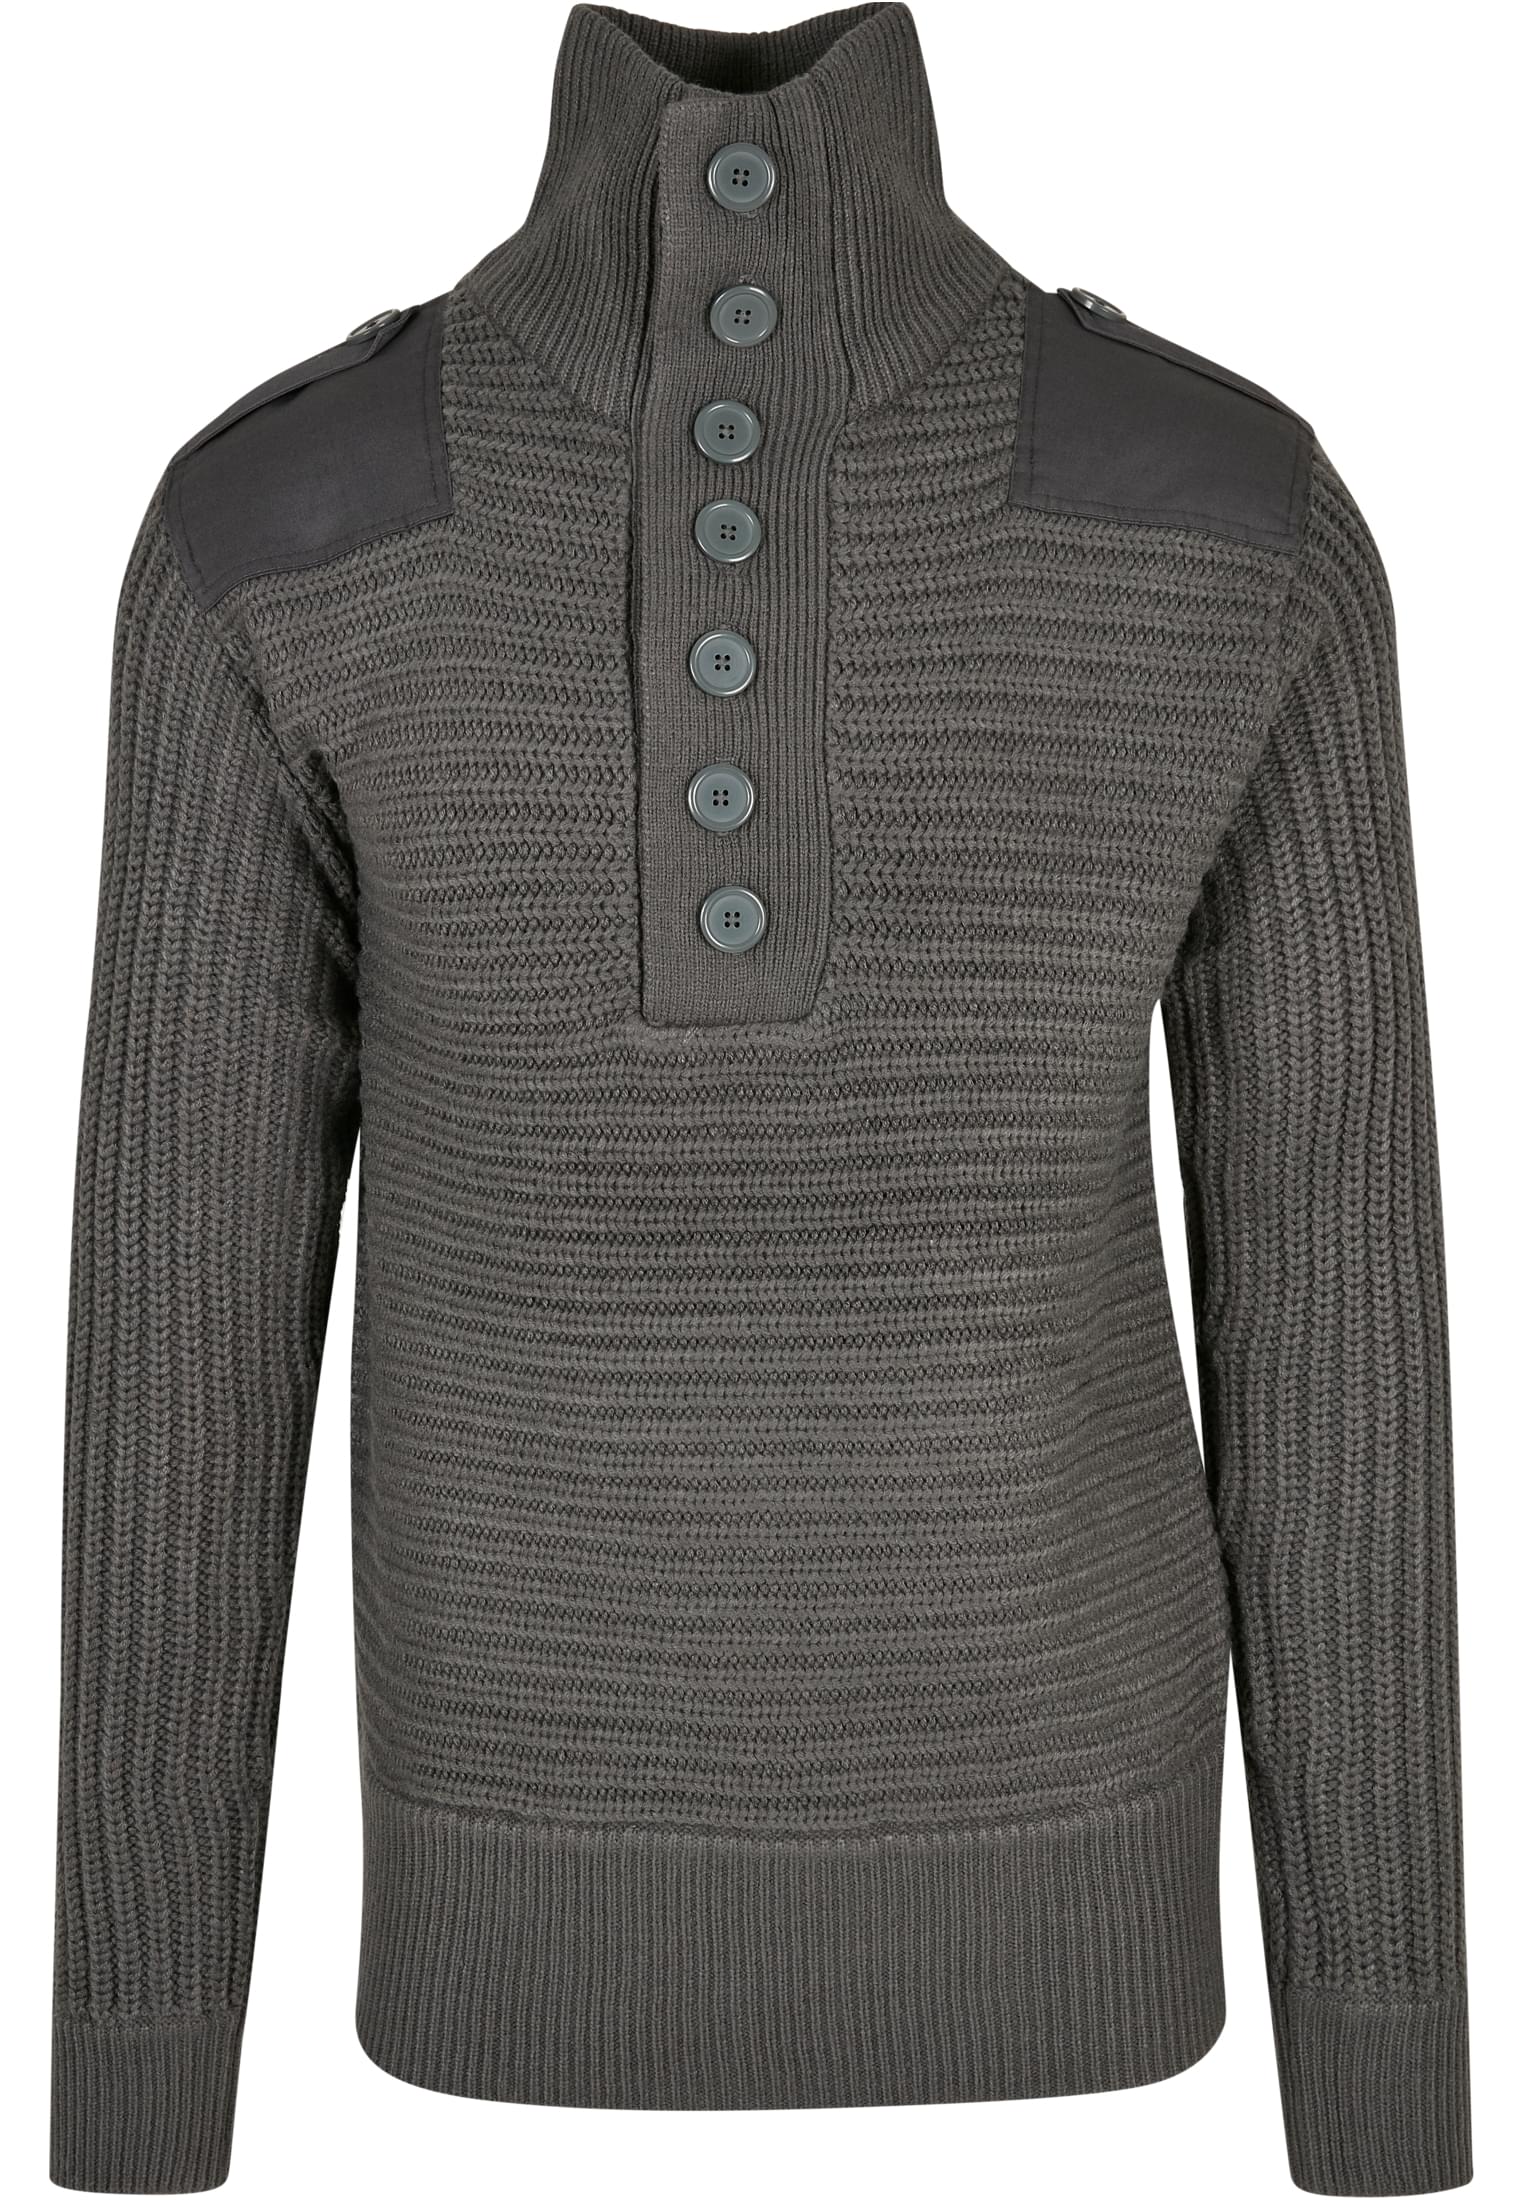 Pullover Alpin Pullover in Farbe anthracite